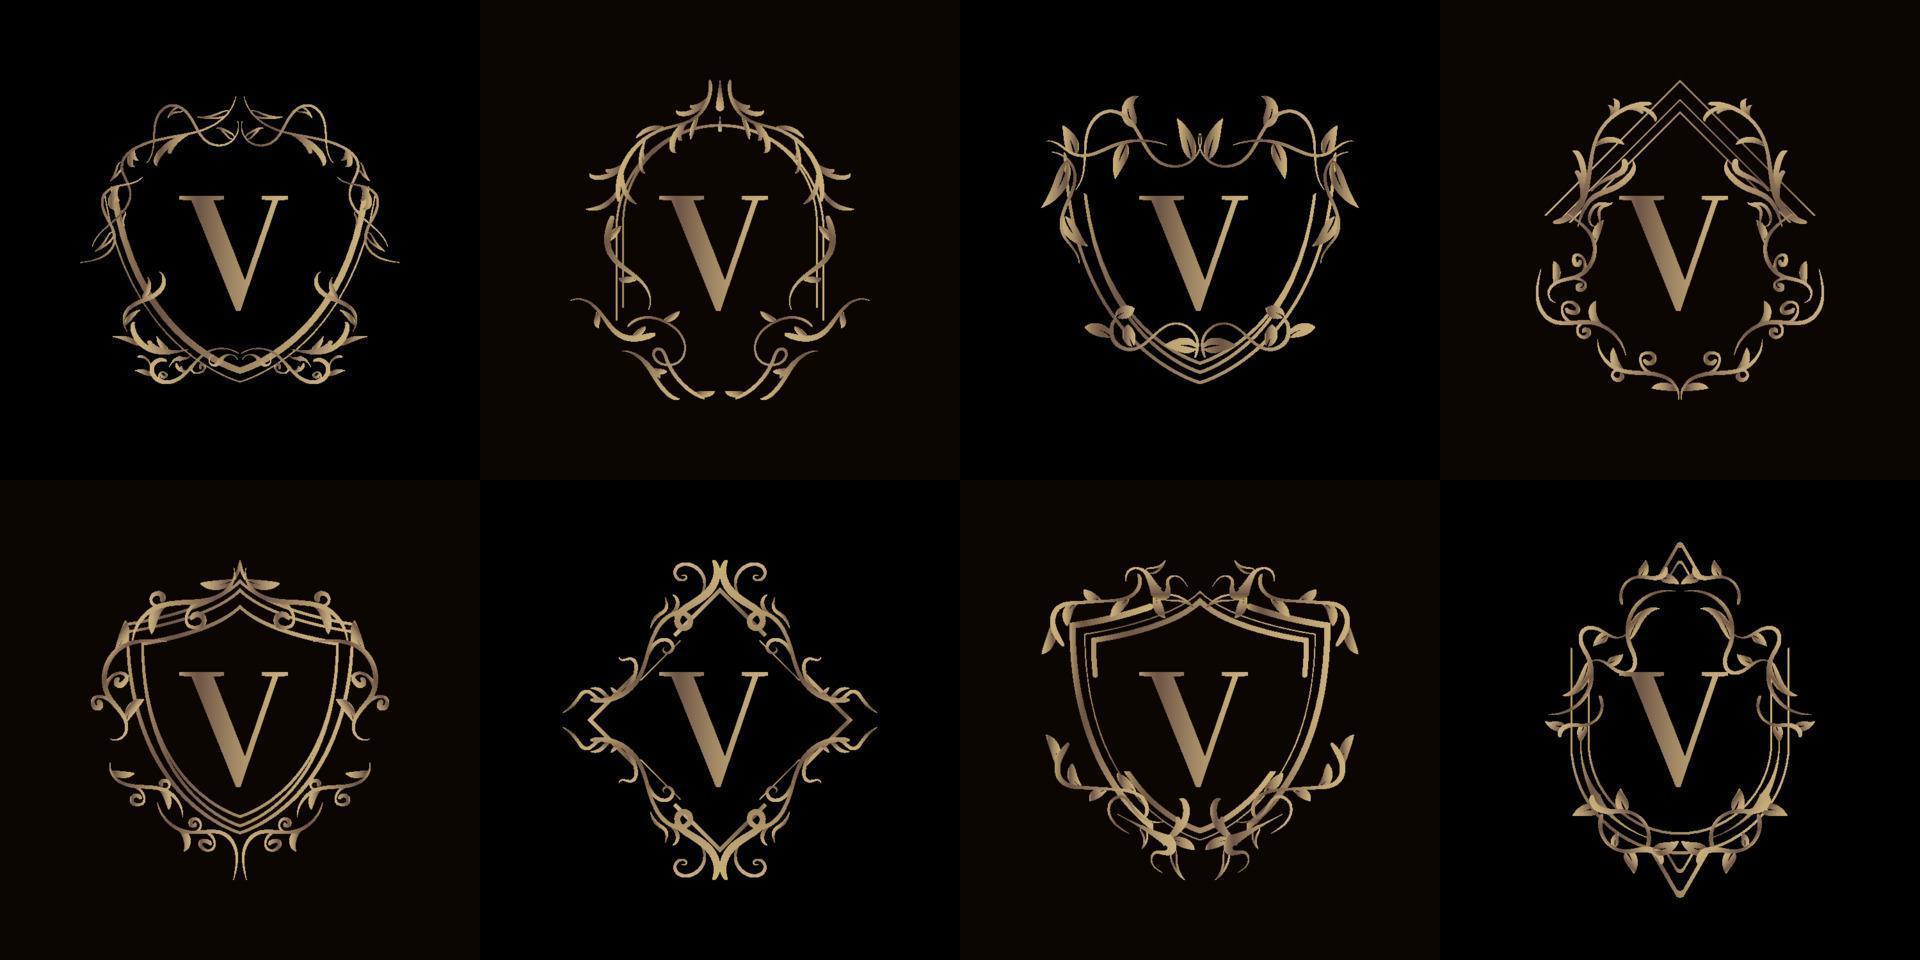 sammlung von logo initial v mit luxusschmuck oder blumenrahmen vektor